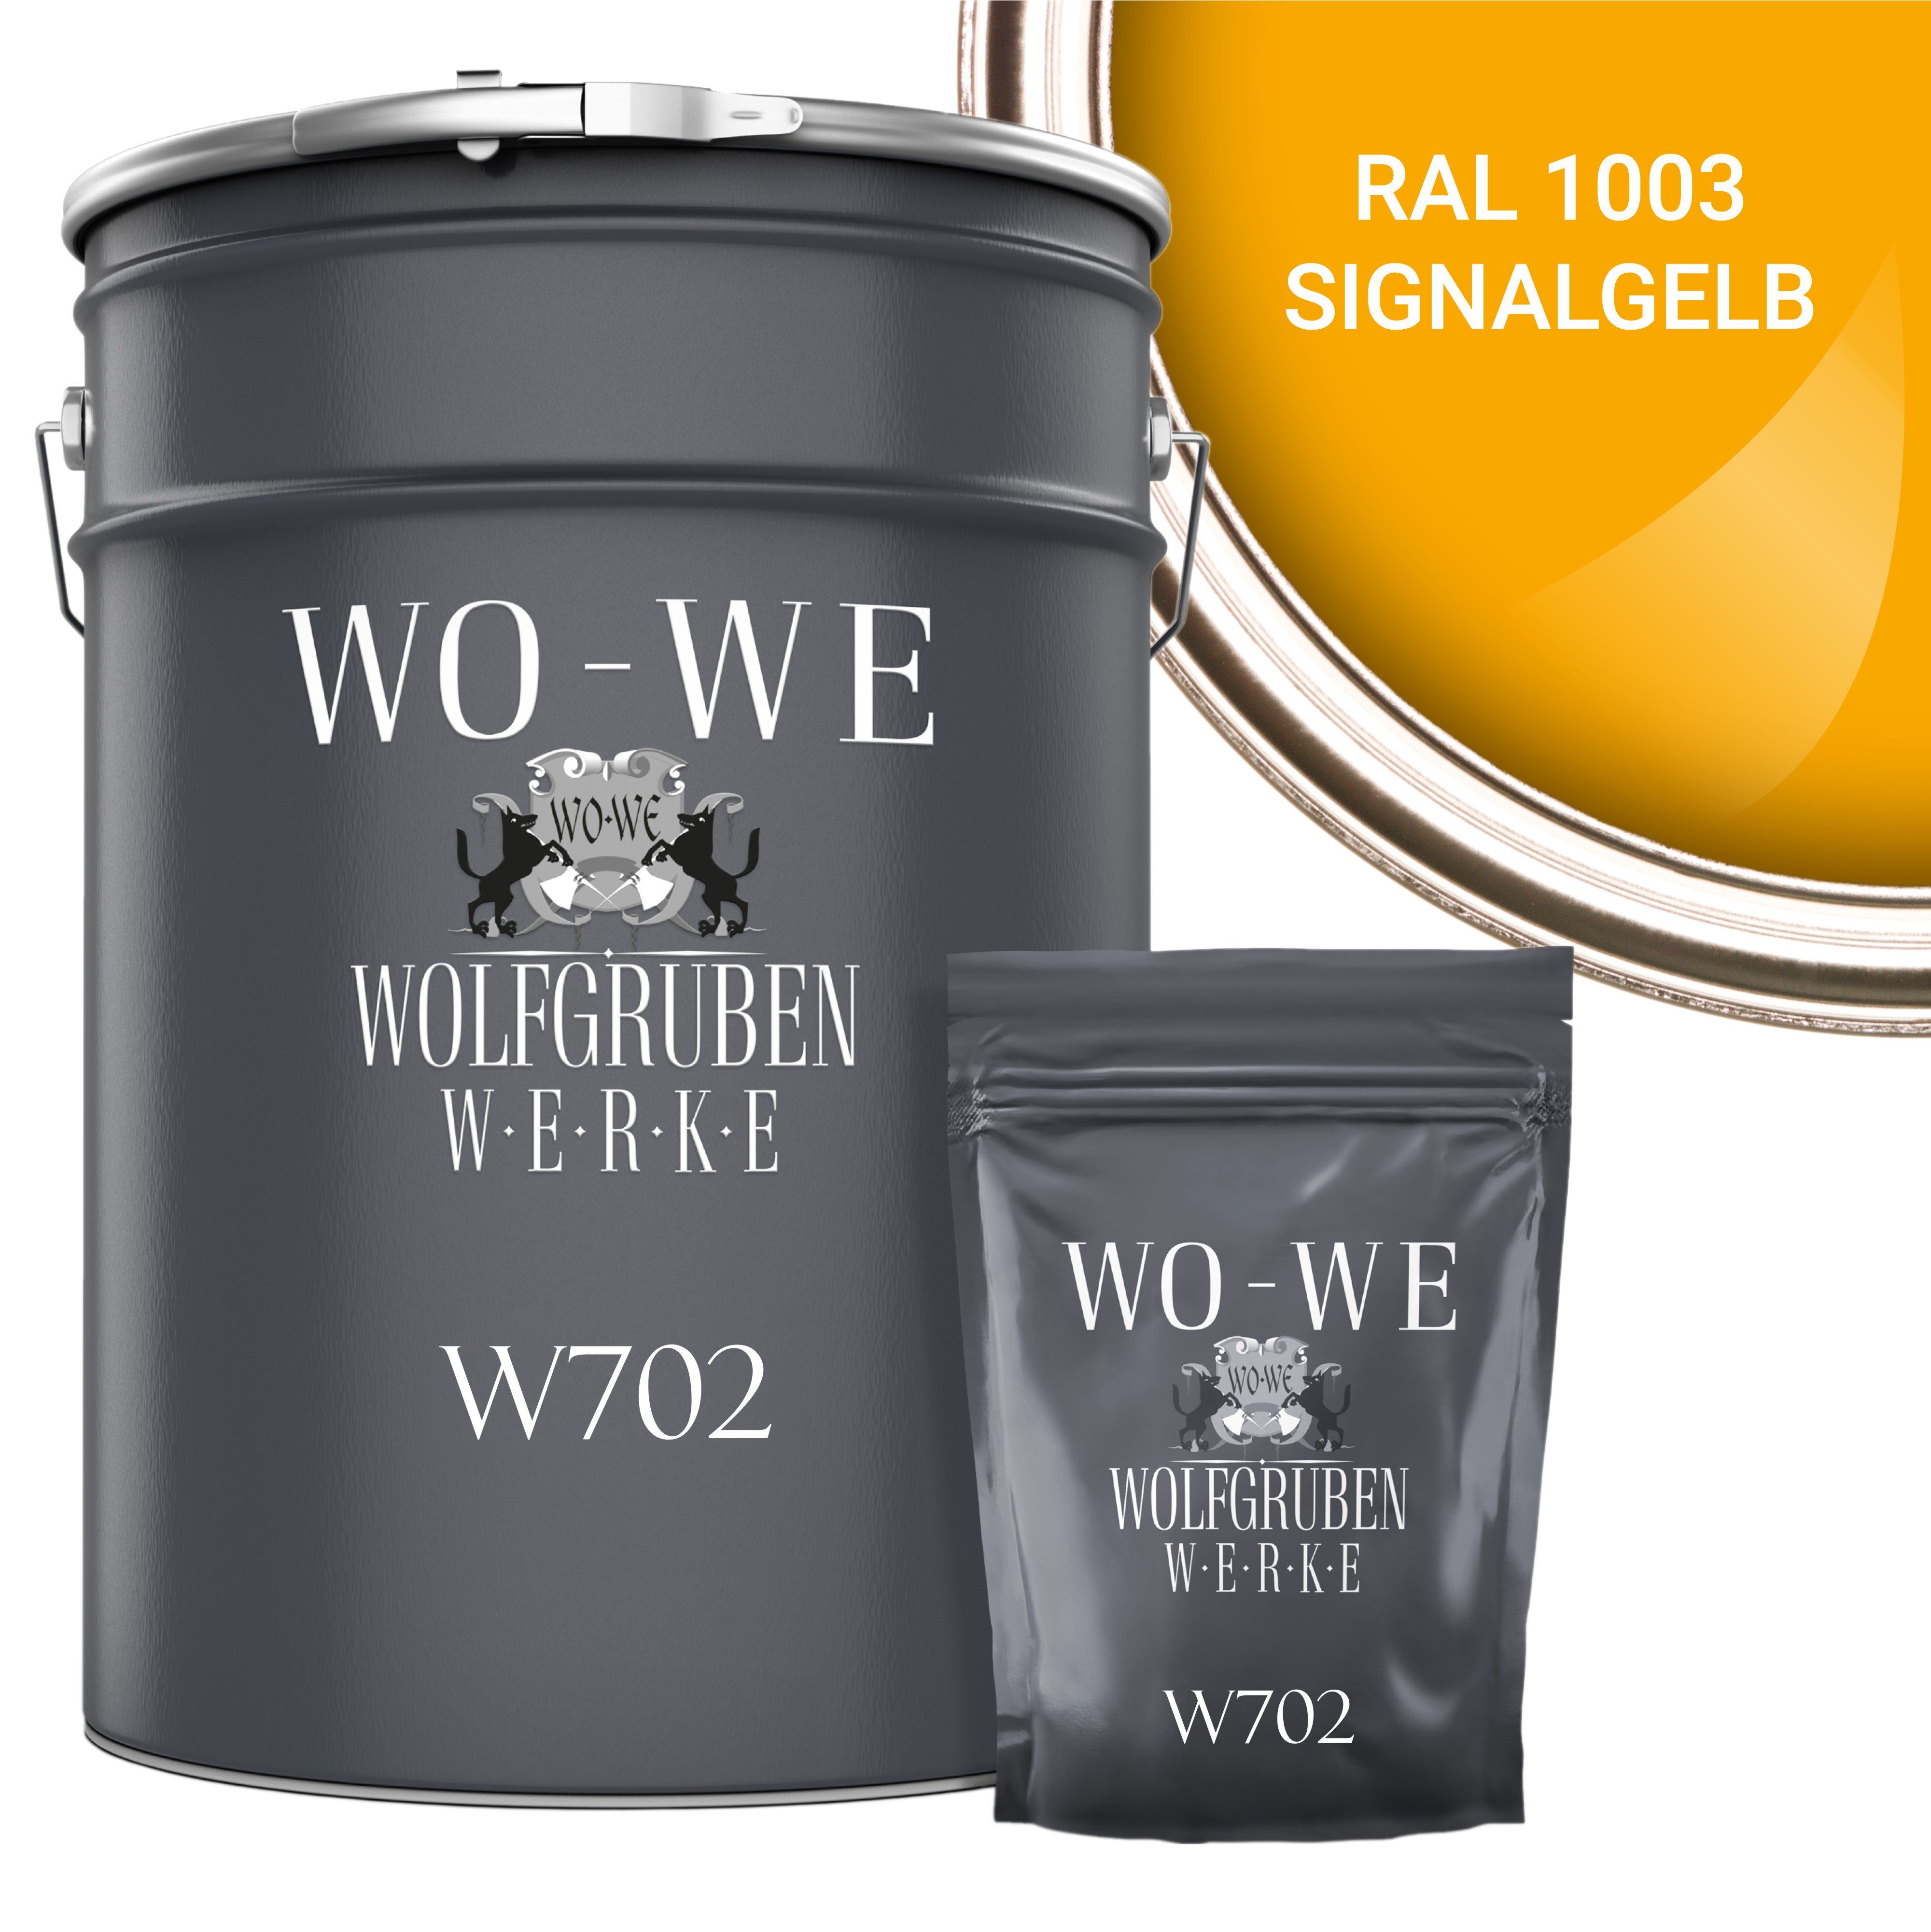 WO-WE Bodenversiegelung 2K Garagenfarbe Bodenbeschichtung W702, 2,5-20Kg, Seidenglänzend, Epoxidharz RAL 1003 Signalgelb